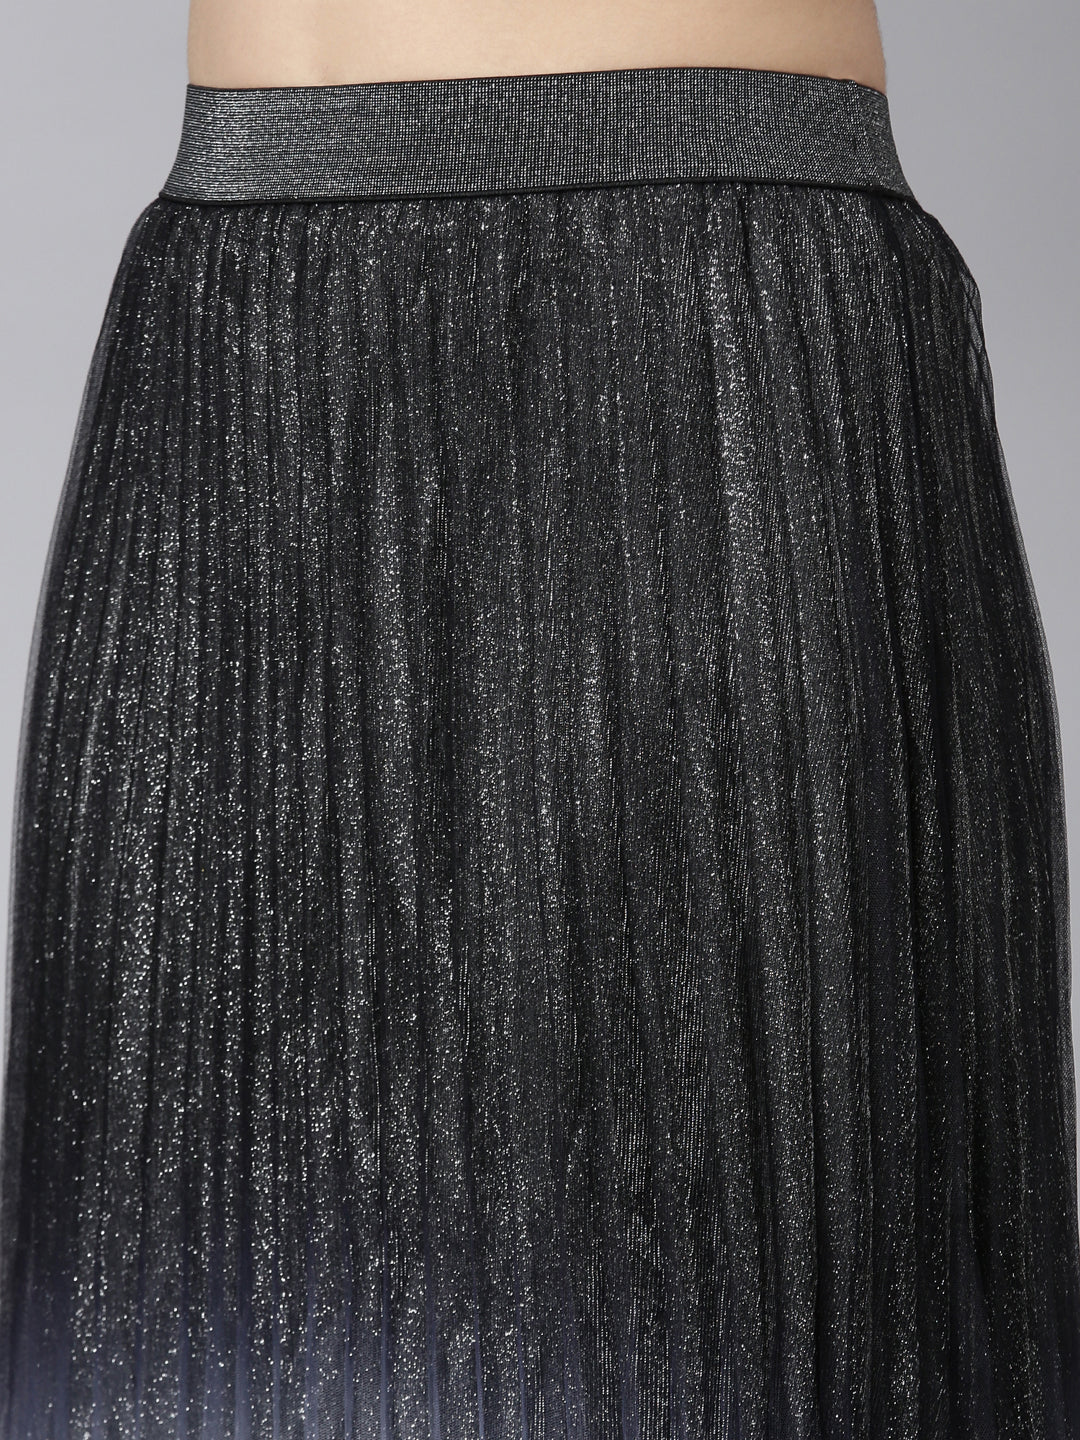 Women Ombre Black Flared Midi Sheer Skirt